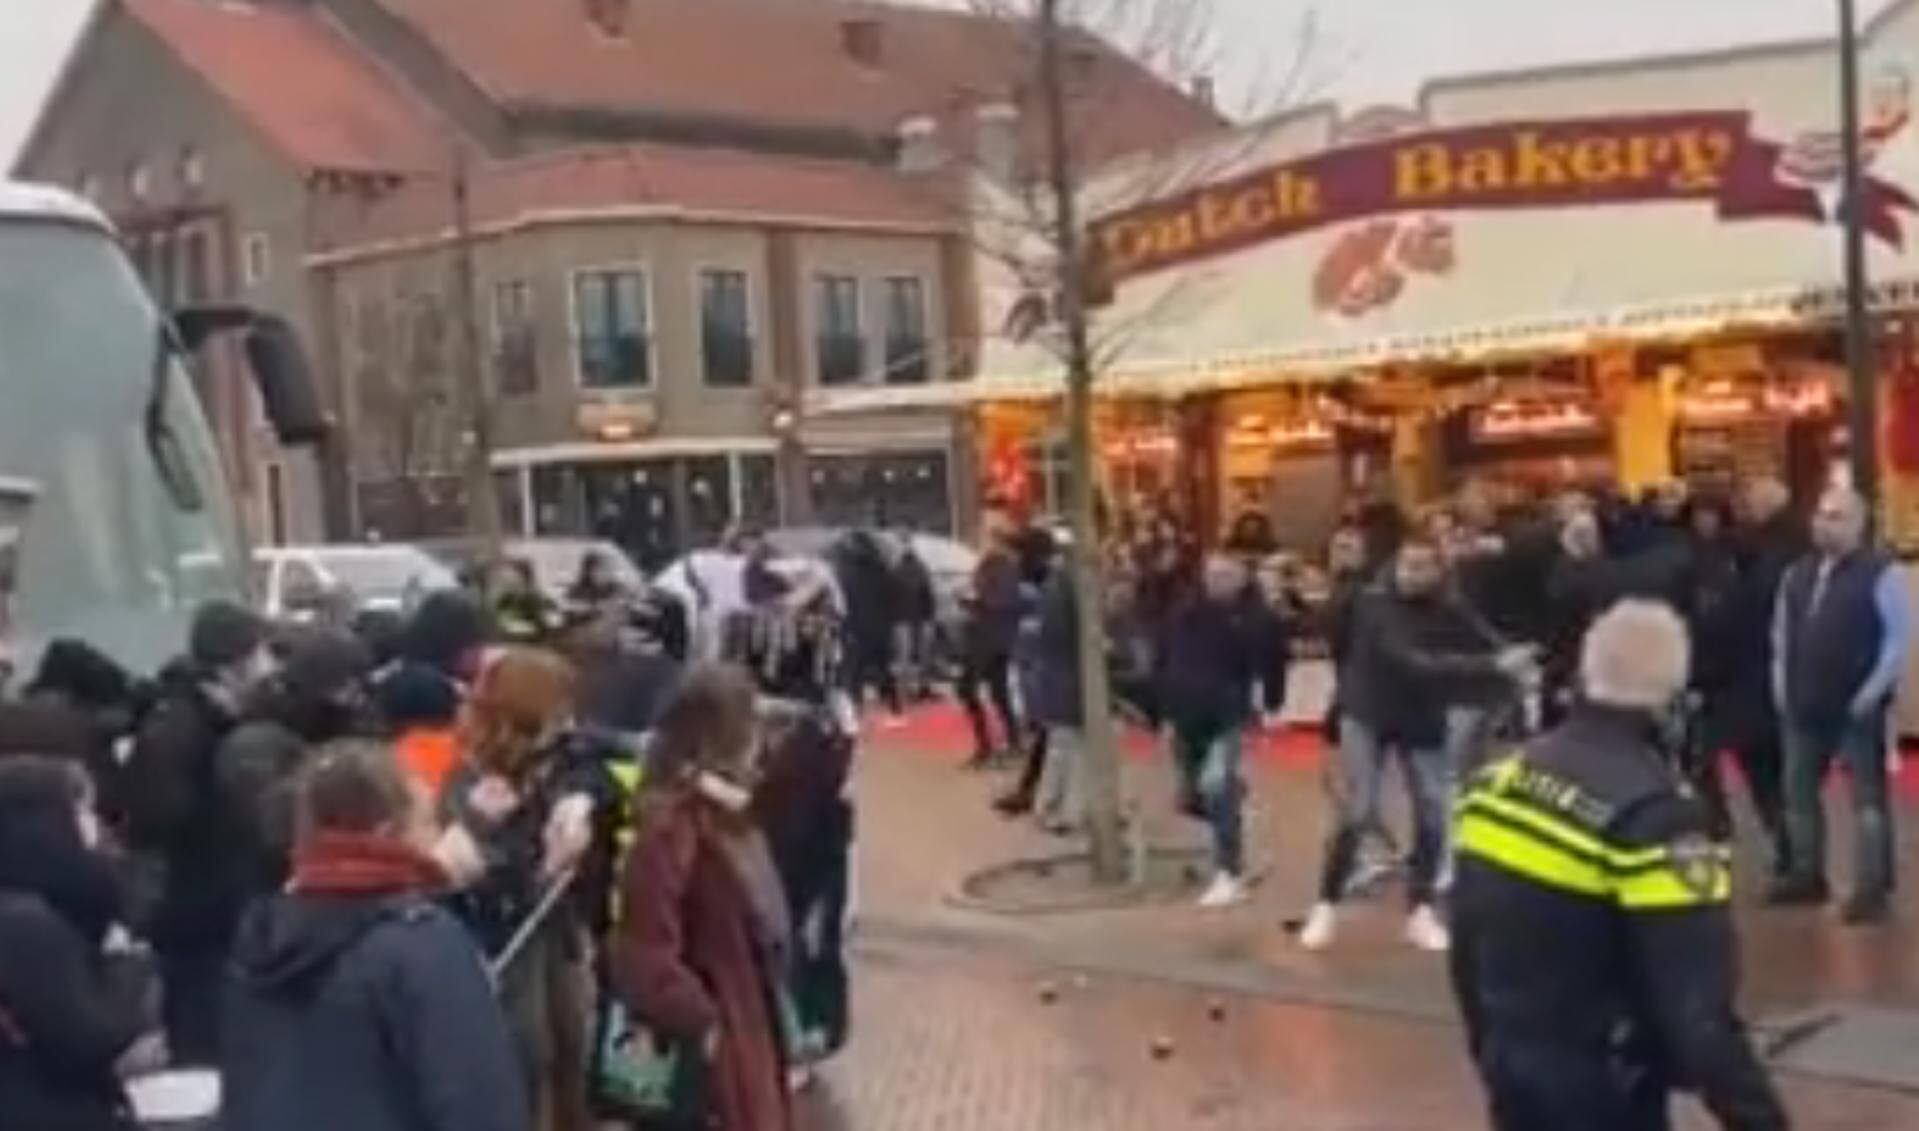 Kick Out Zwarte Piet kwam afgelopen weekend onaangekondigd demonstreren in Volendam, tot groot ongenoegen van veel Volendammers.